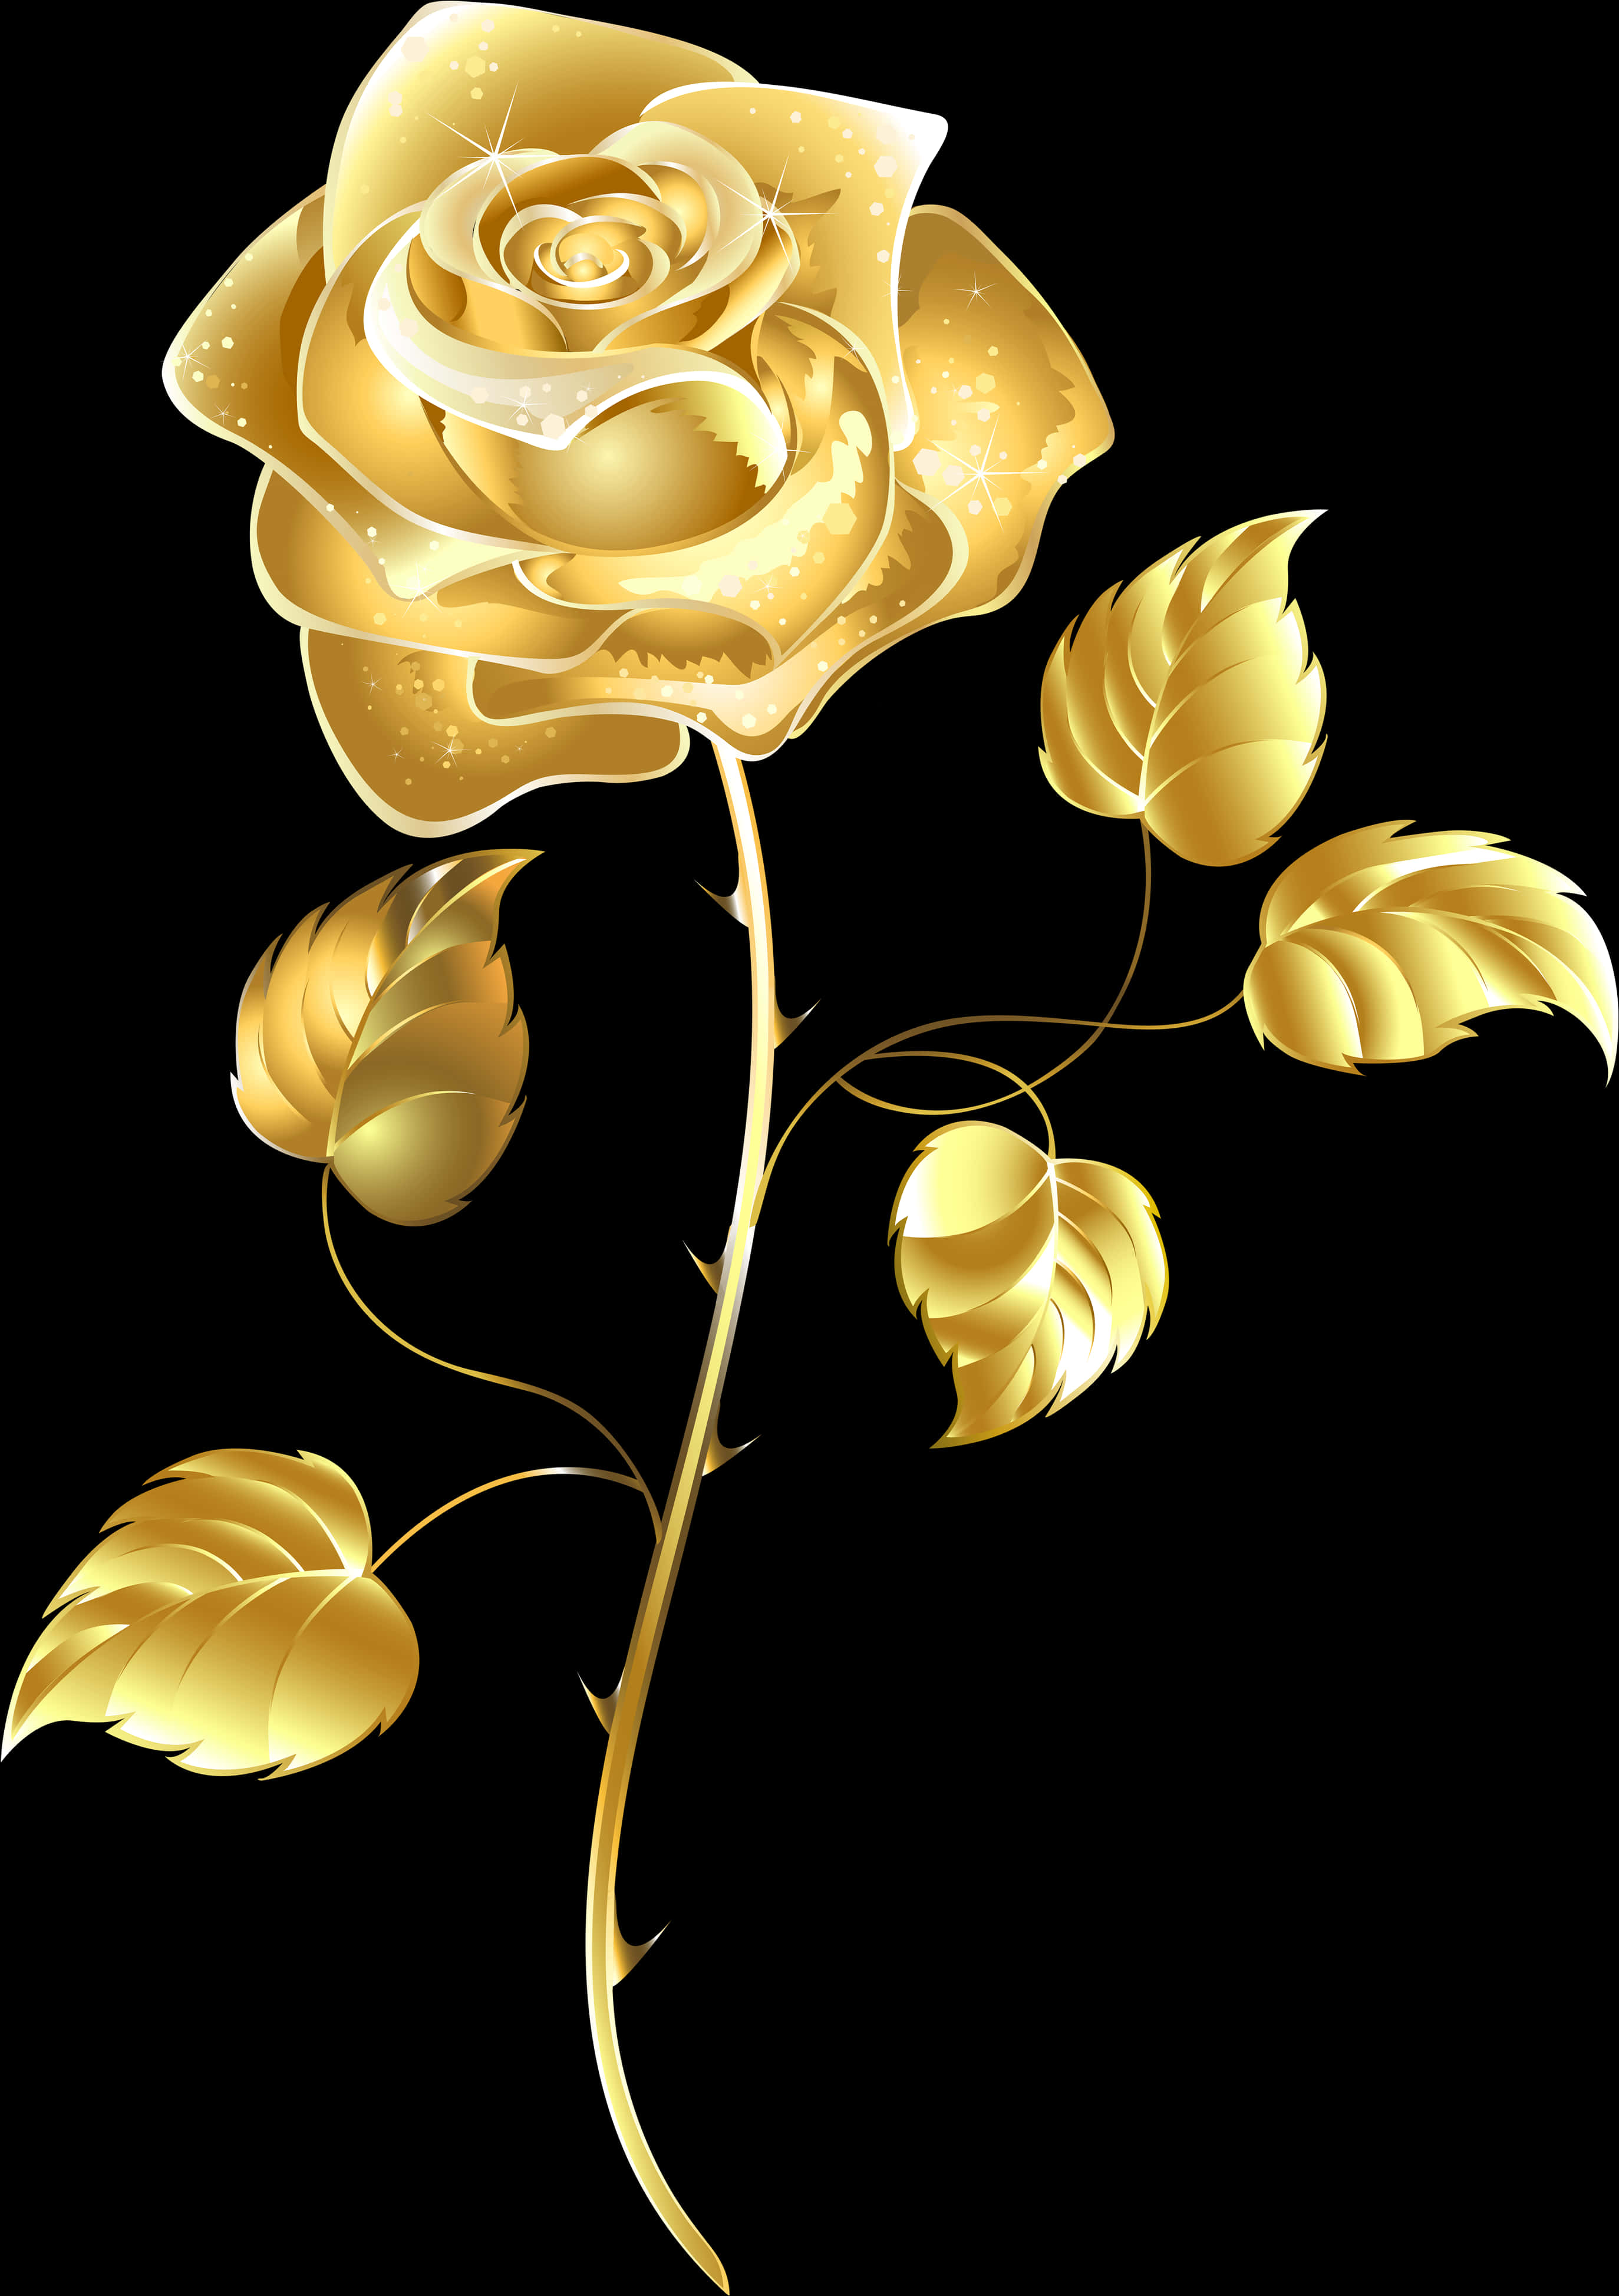 Elegant Golden Rose Artwork PNG image